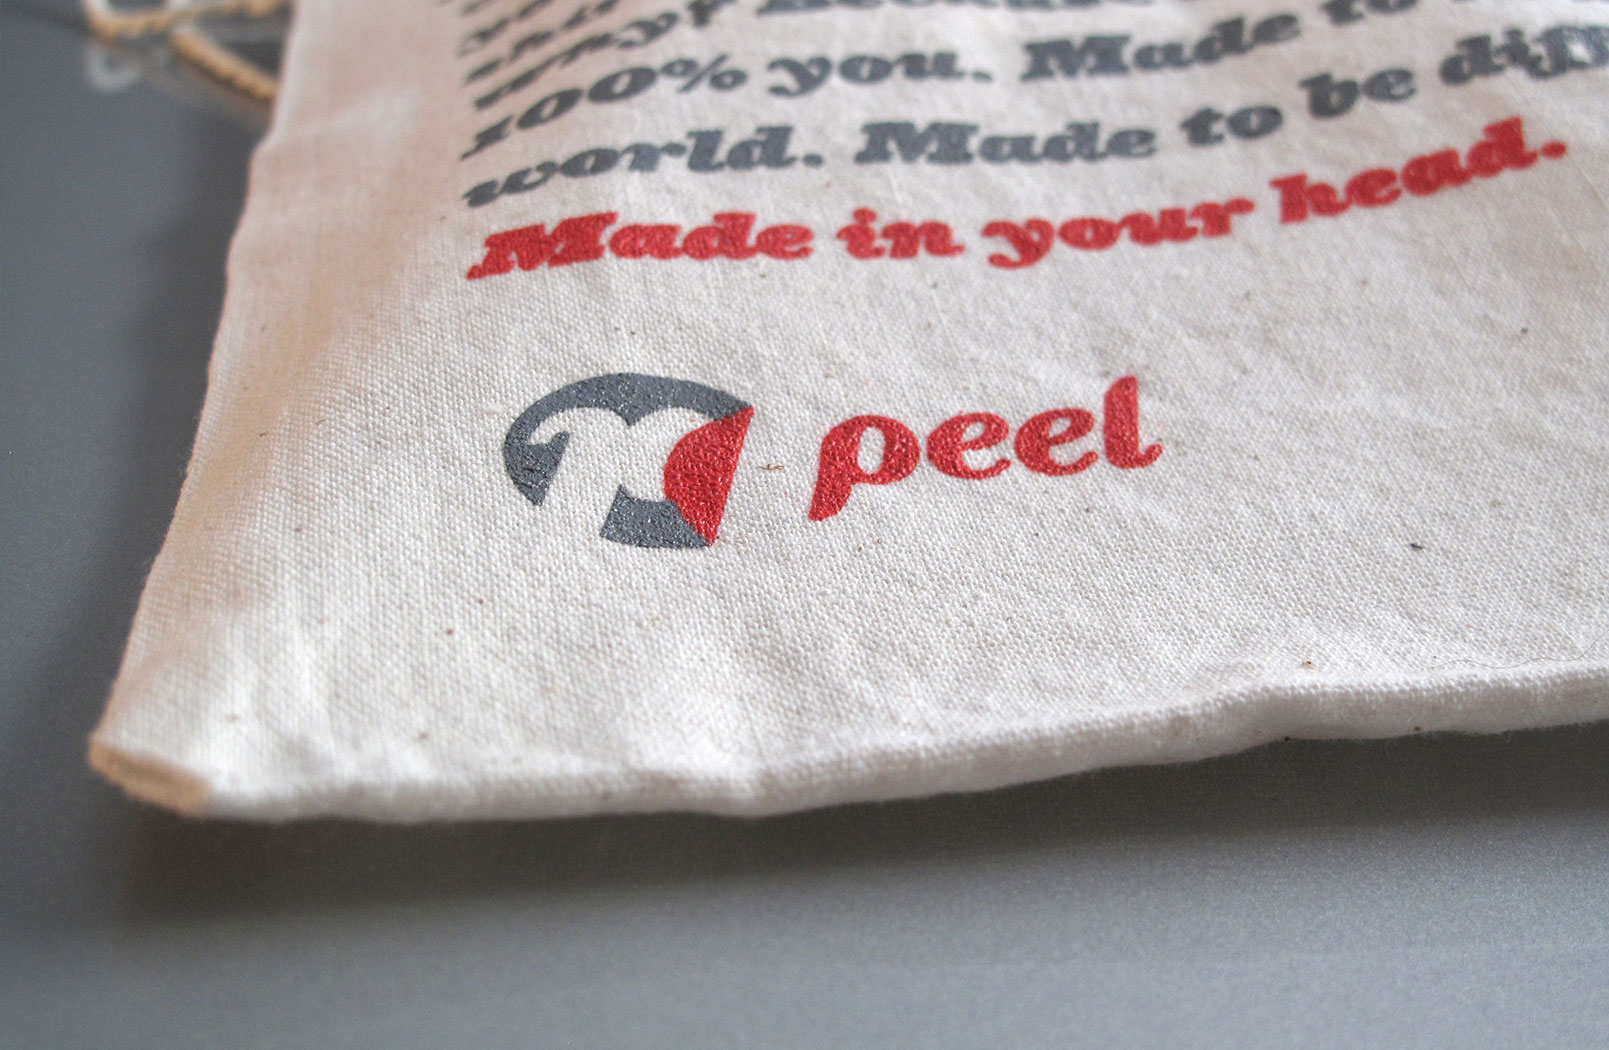 Peel-Image-3